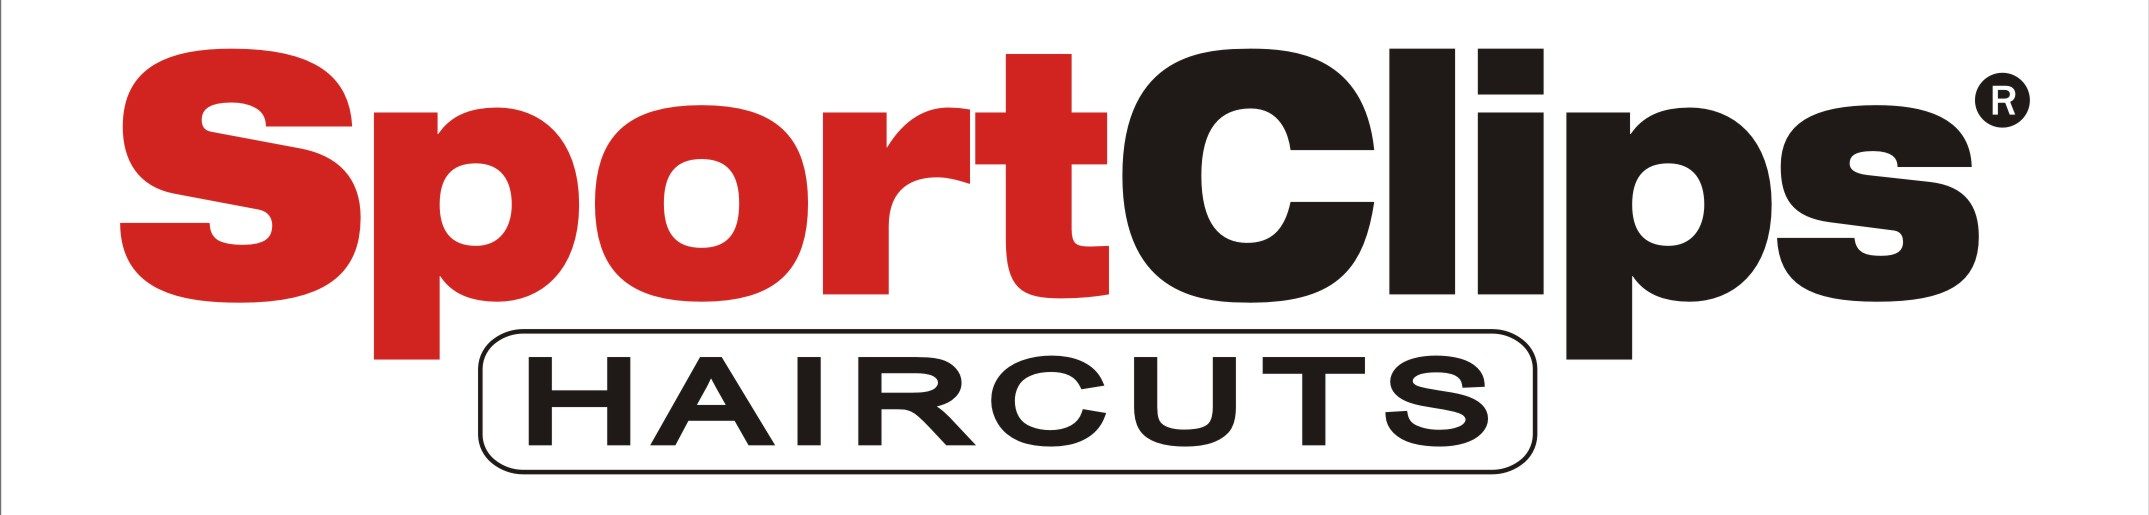 Logotipo de clips deportivos